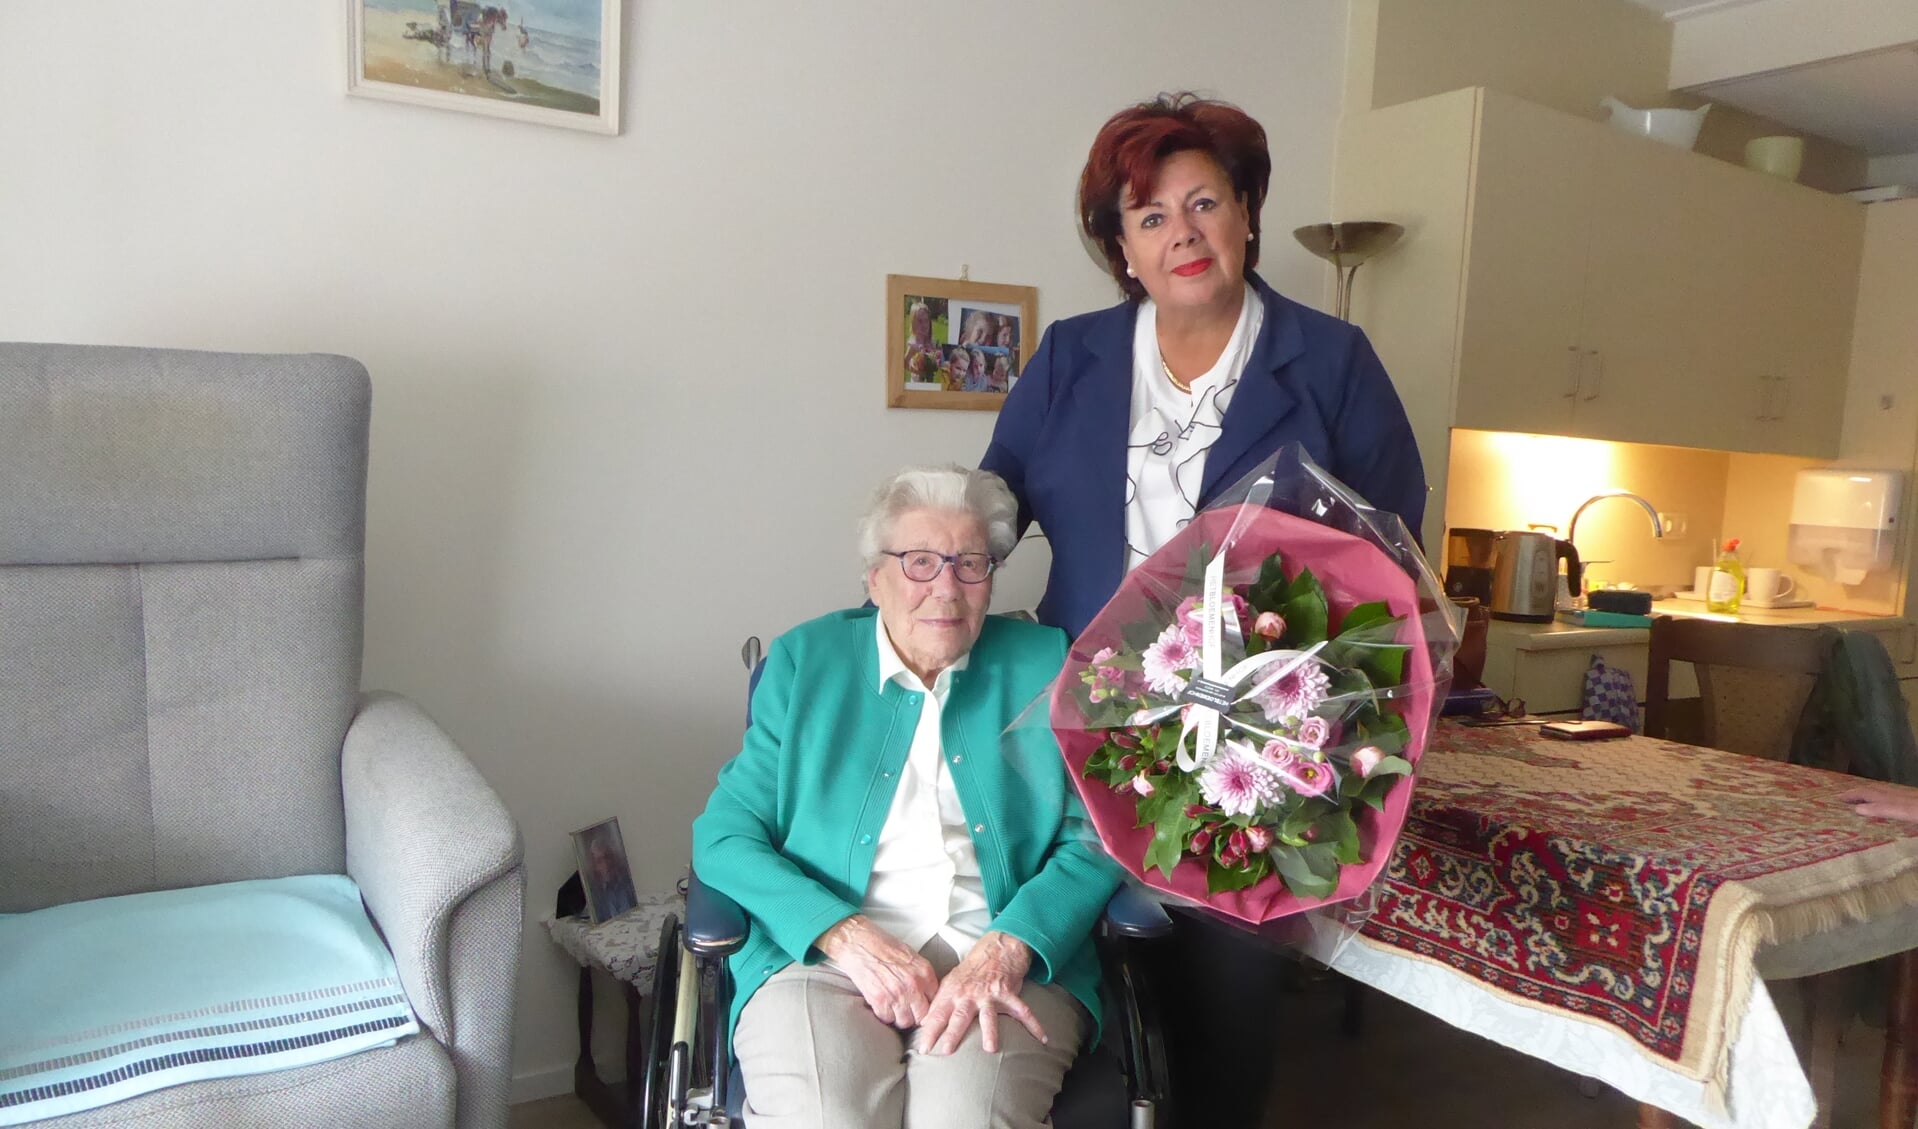 Op haar 100e verjaardag kwam de burgemeester 'digitaal langs'; nu was er een echte felicitatie. | Foto: Ina Verblaauw.